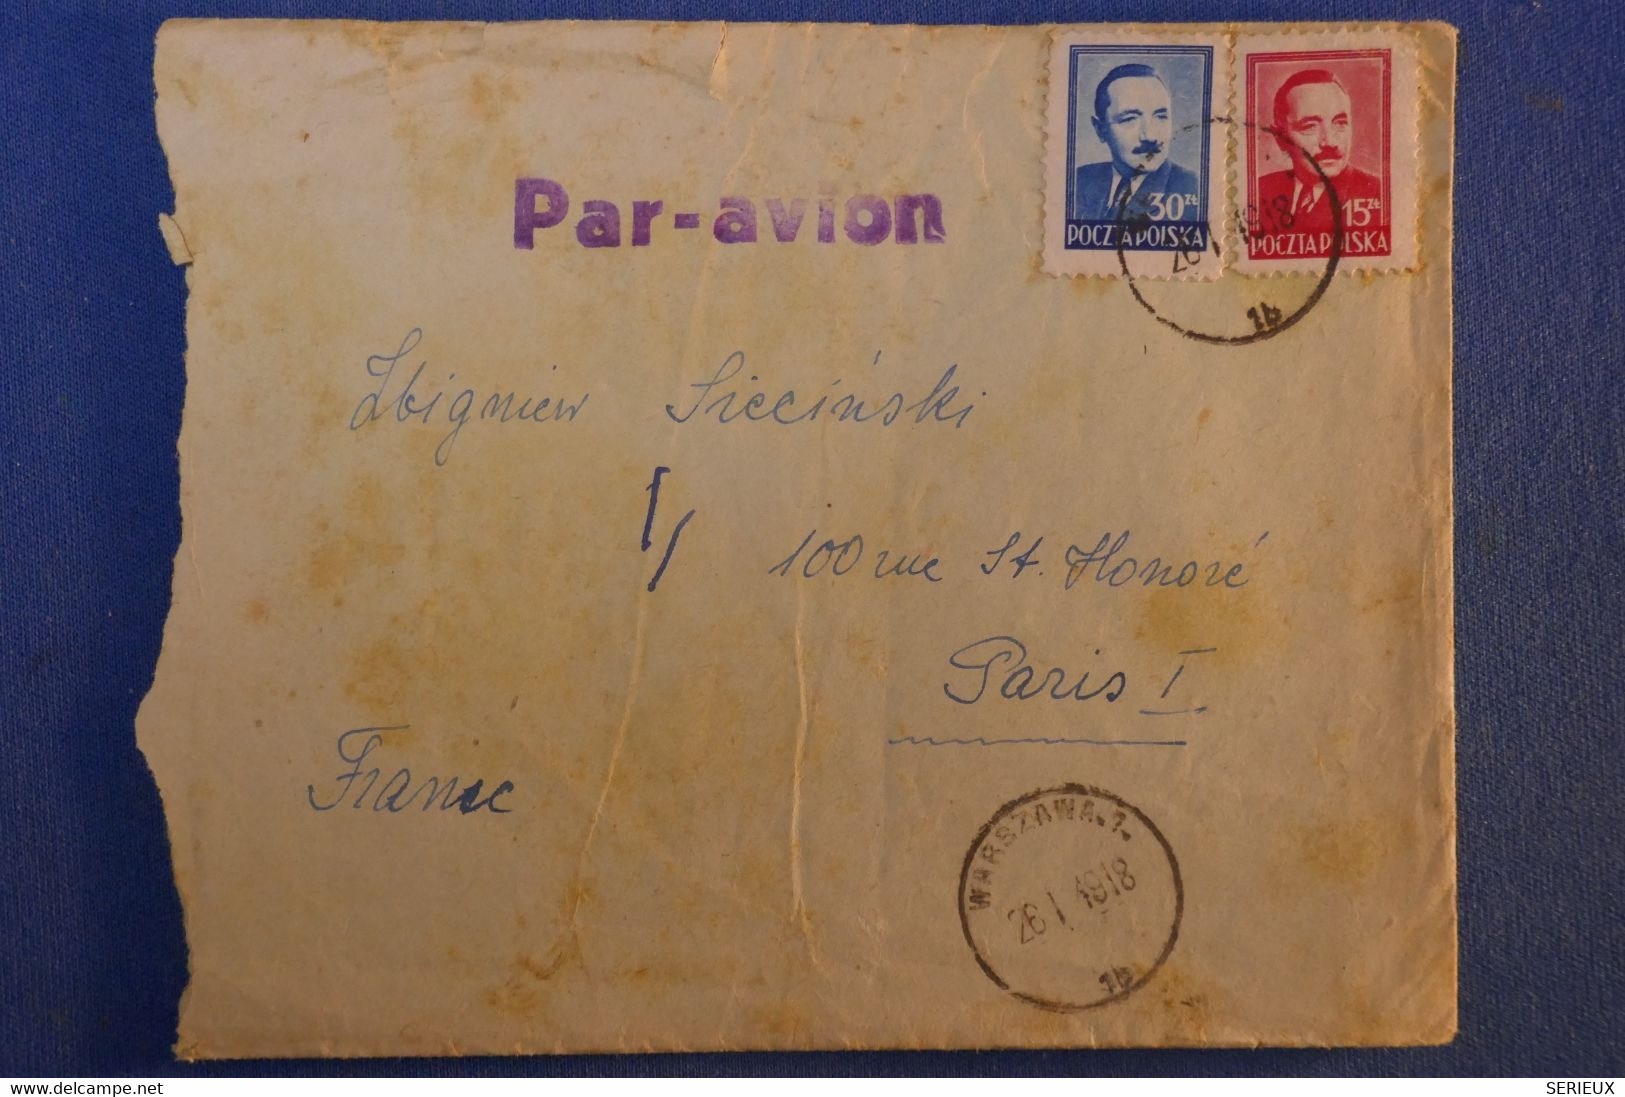 E10 POLOGNE LETTRE PAR AVION 1918 VARSOVIE POUR PARIS RUE ST HONORé + LETTRE A LIRE - Lettres & Documents